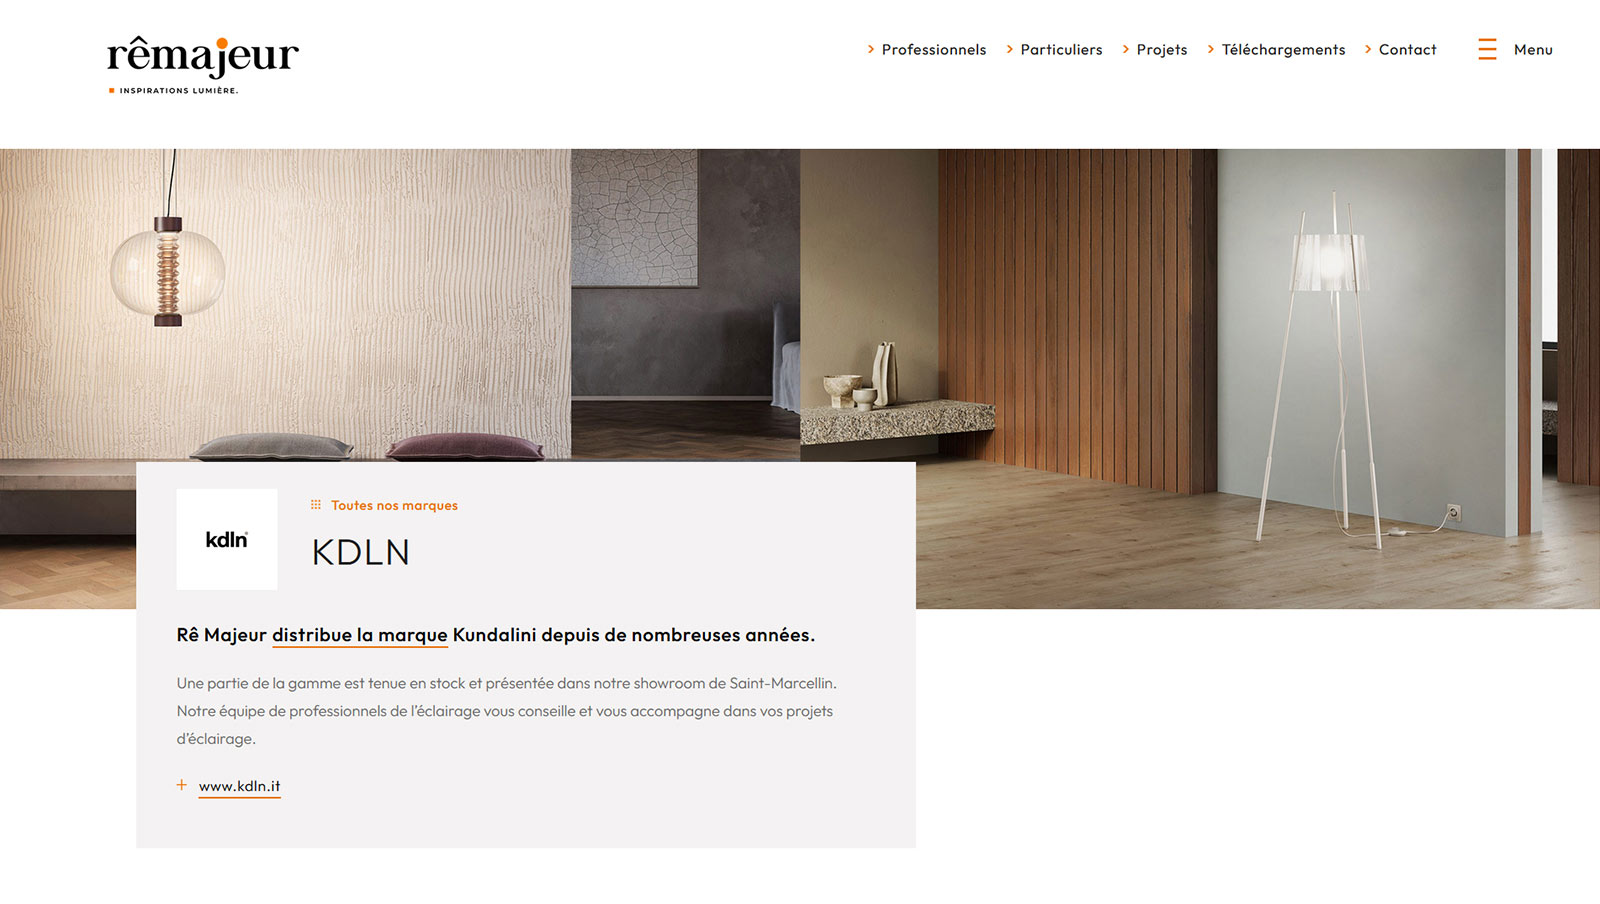 Création du site internet pour Rê Majeur, éclairage architectural, par Hervé Augoyat à Lyon